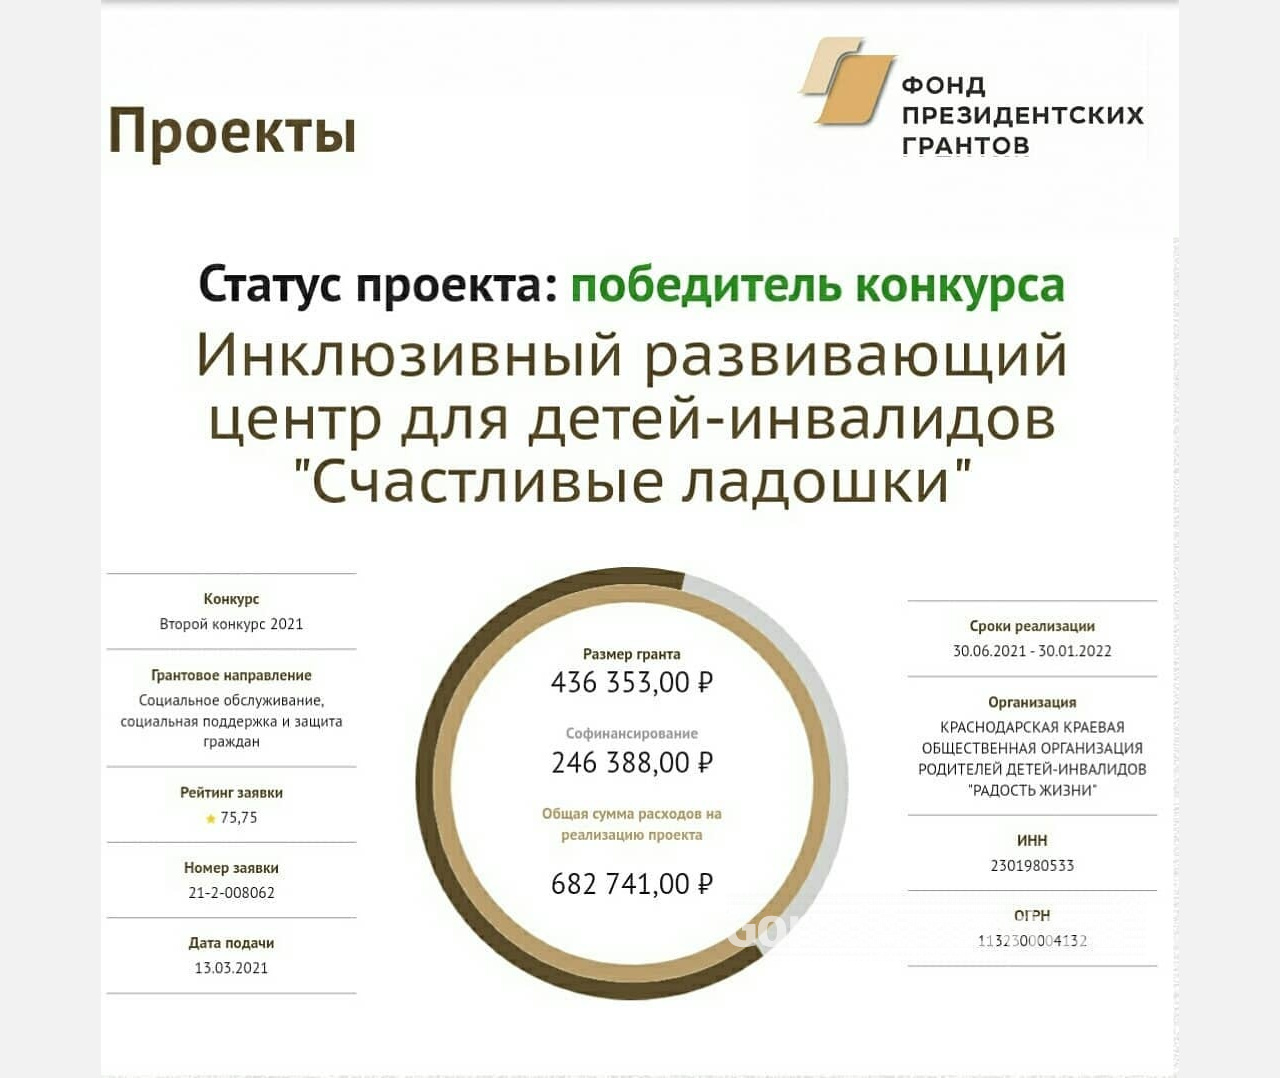 Президентский грант в полмиллиона рублей получит организация детей – инвалидов из Армавира 